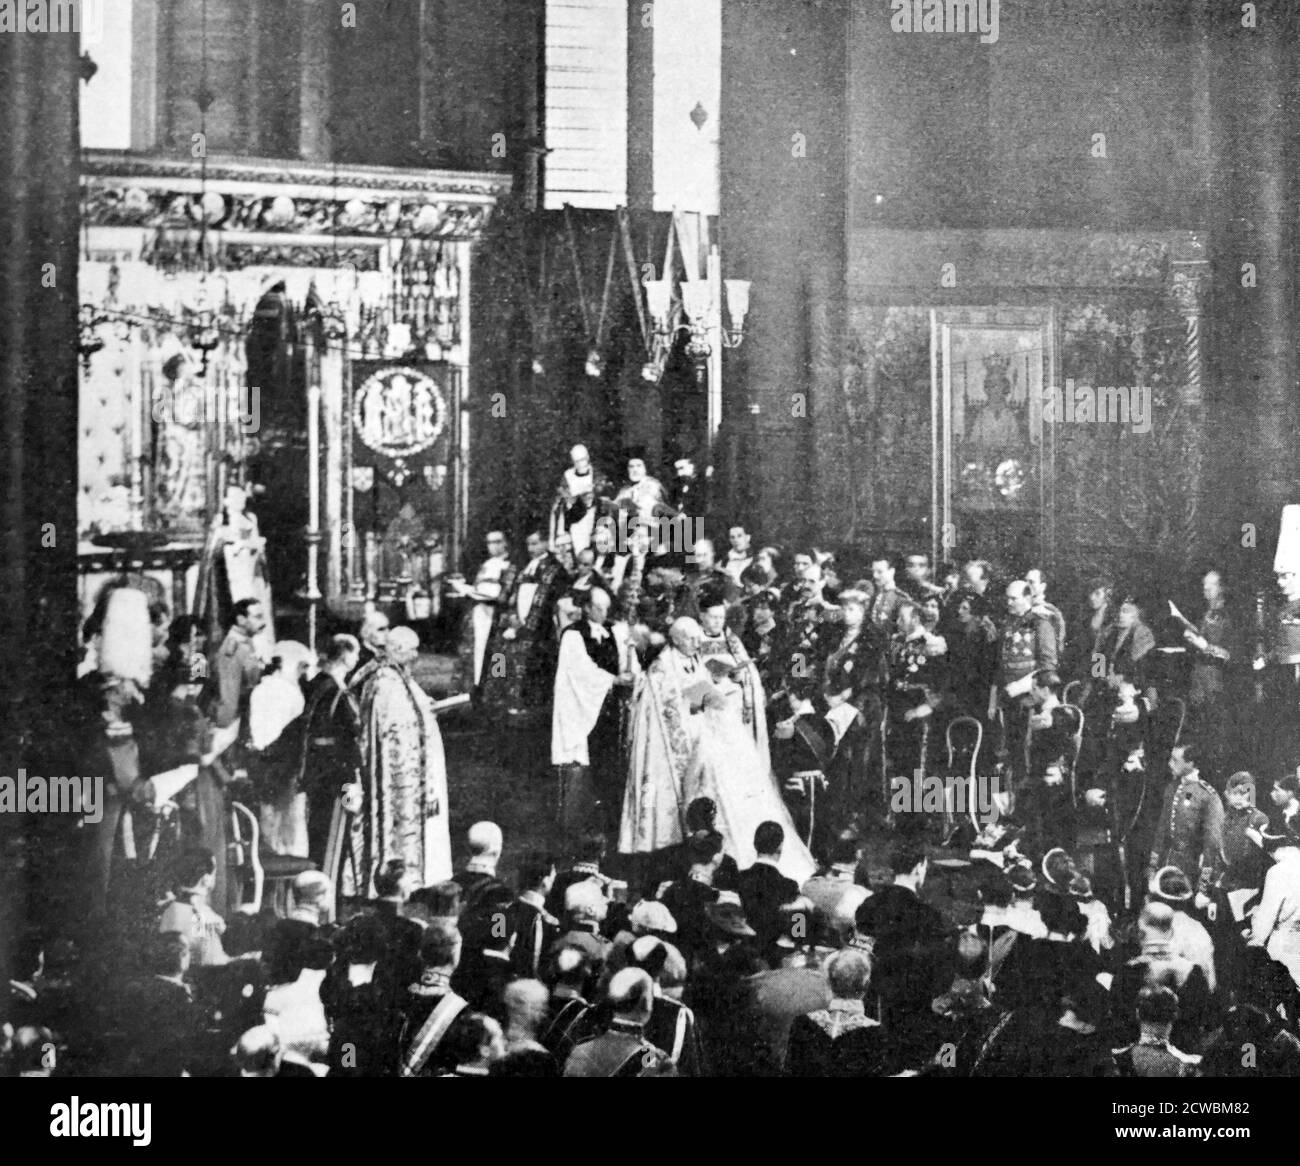 Foto in bianco e nero dall'interno dell'Abbazia di Westminster durante il matrimonio del Principe Giorgio, Duca di Kent (1902-1942) e della Principessa Marina di Grecia (1906-1968); il matrimonio si è svolto il 29 novembre 1934. Foto Stock